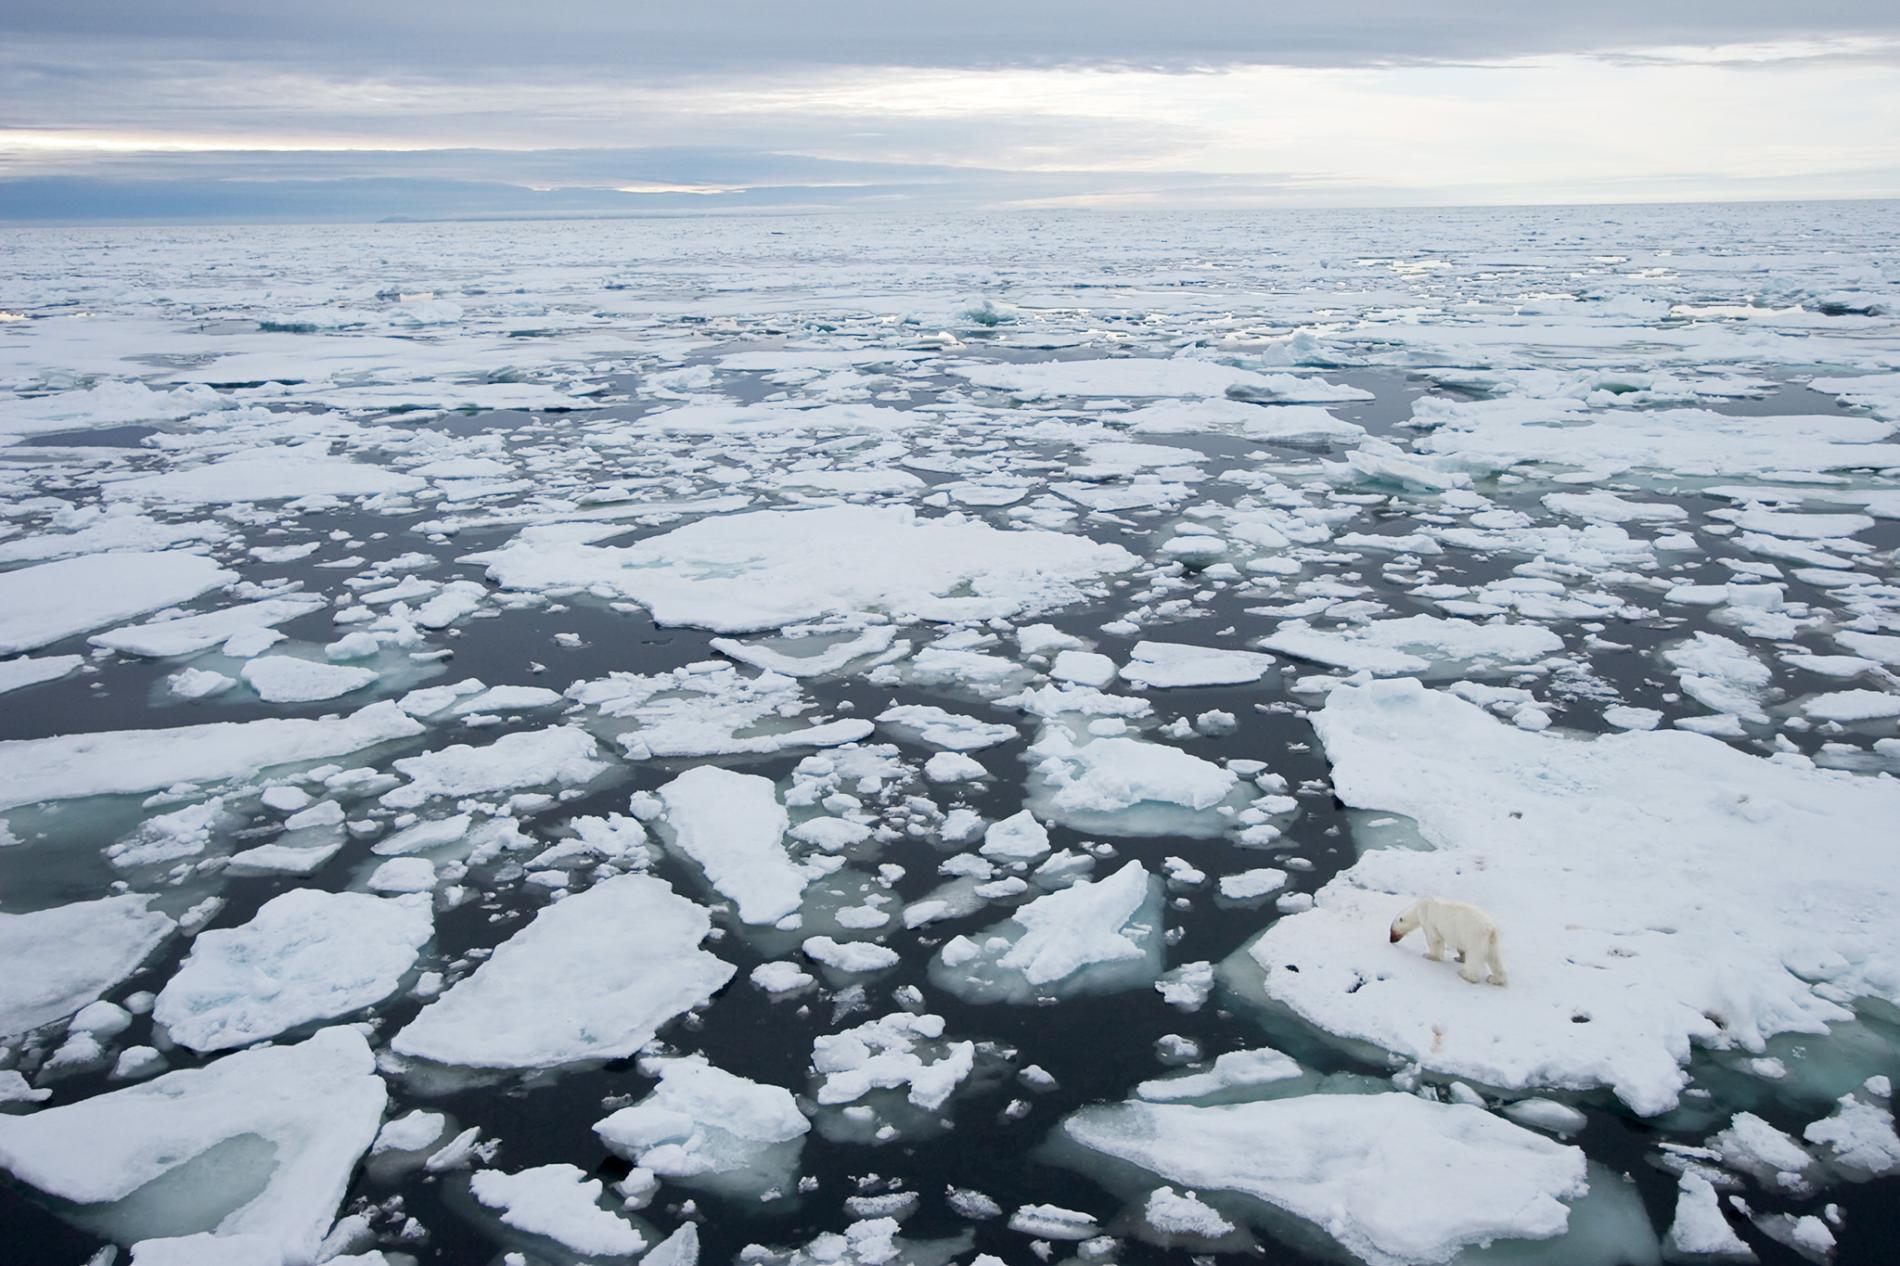 “Επιχειρηματικές ευκαιρίες”, πετρέλαιο και μέταλλα βλέπουν οι ΗΠΑ πίσω από το λιώσιμο των πάγων της Αρκτικής #skouries